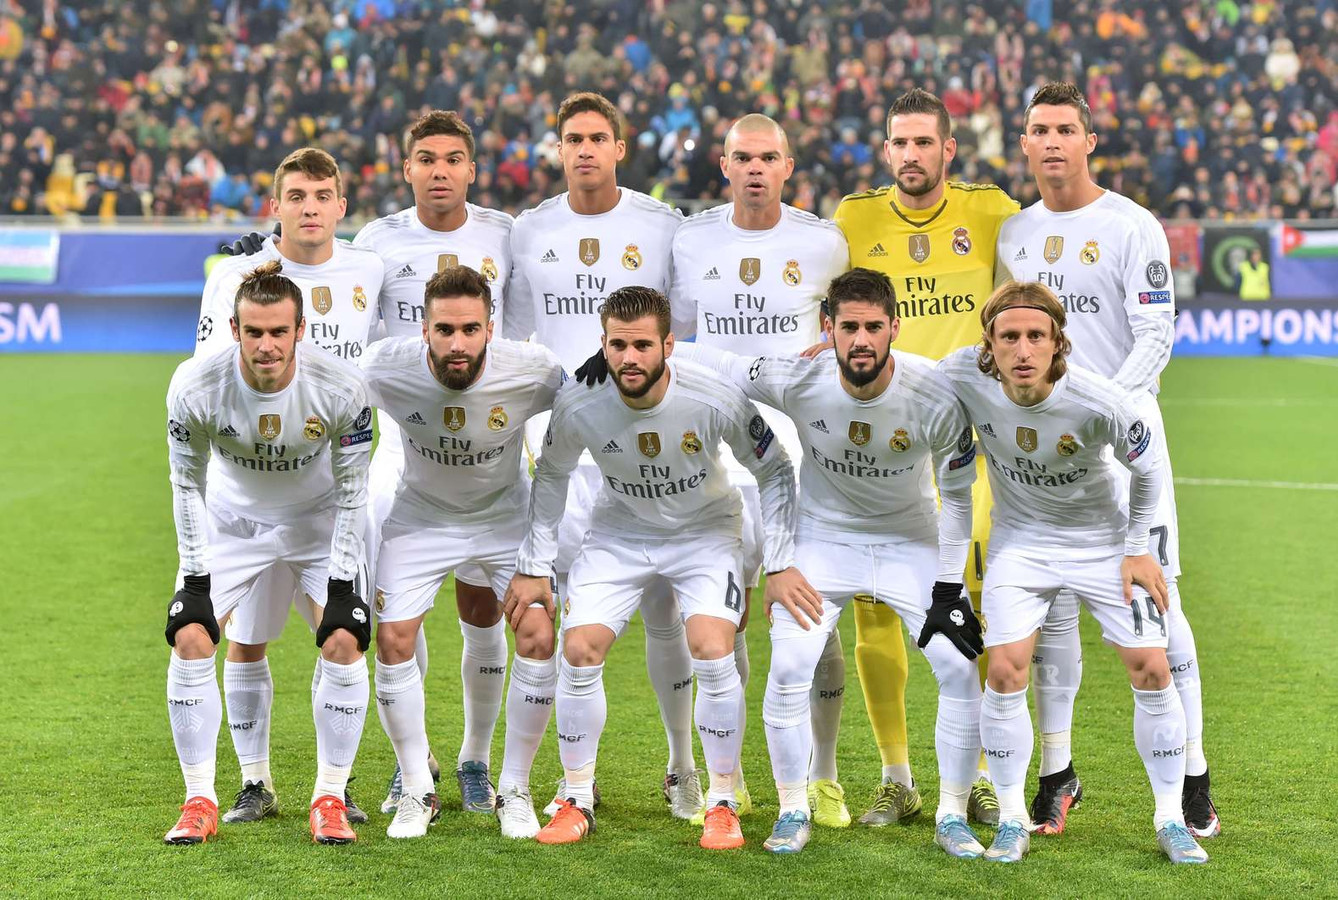 Moreel onderwijs Technologie as Real Madrid mag twee periodes geen spelers kopen' | Foto | AD.nl